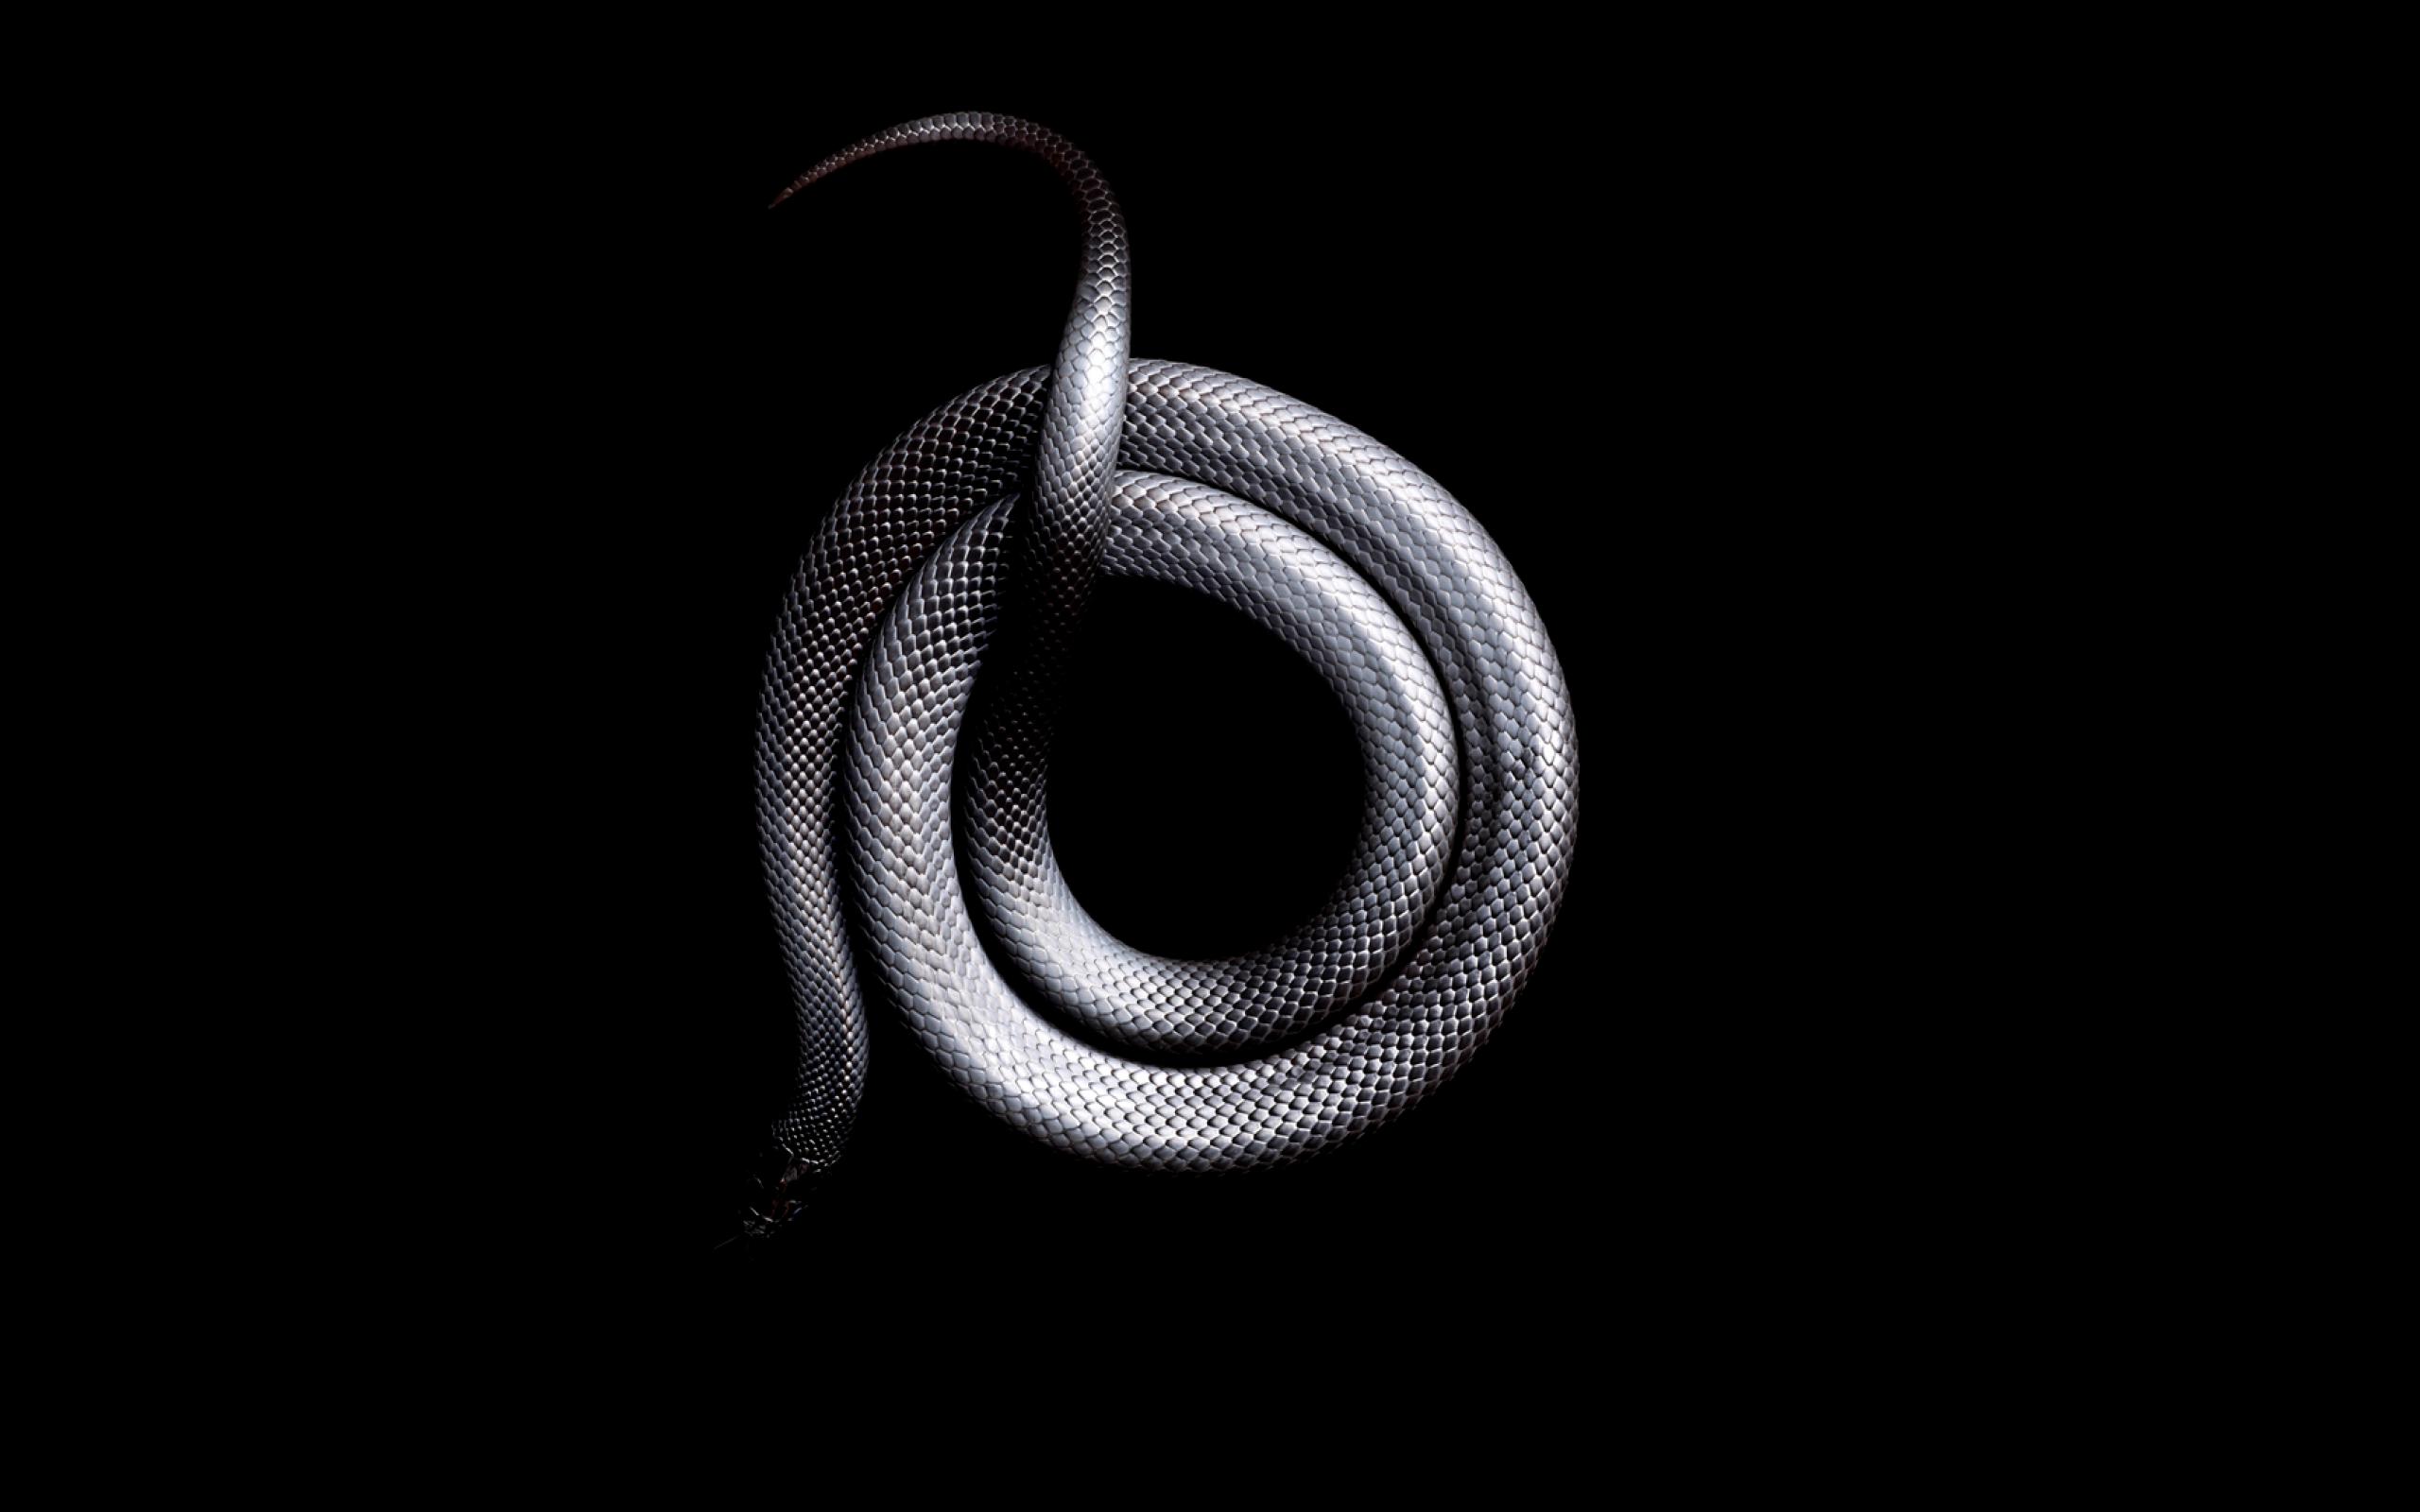 фото змеи на фон